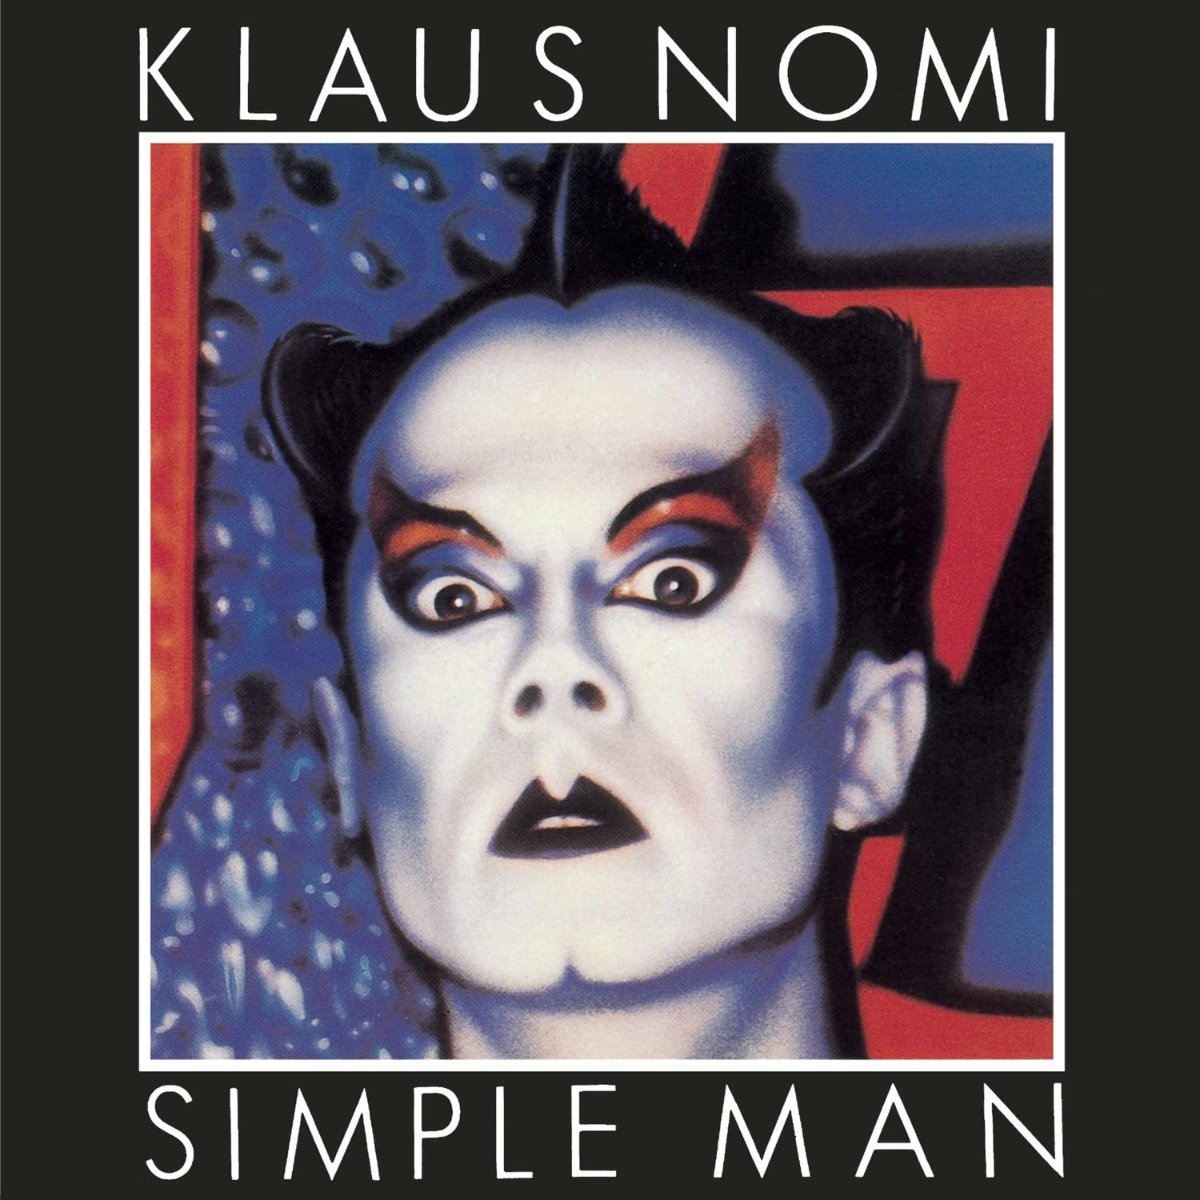 CD Shop - NOMI, KLAUS SIMPLE MAN -REISSUE/DIGI-